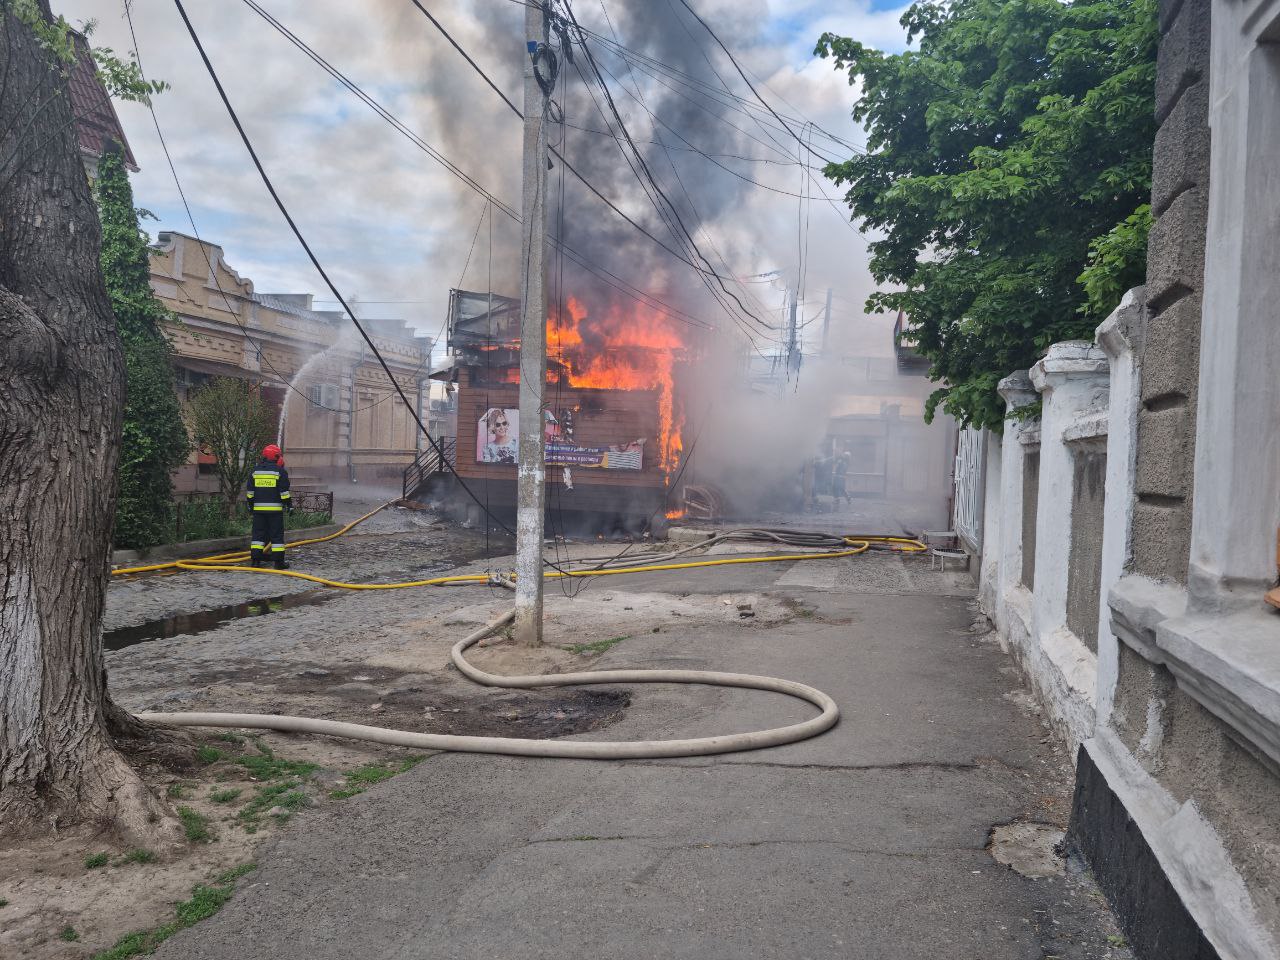 В Измаиле полностью сгорел магазин "Дом оптики"